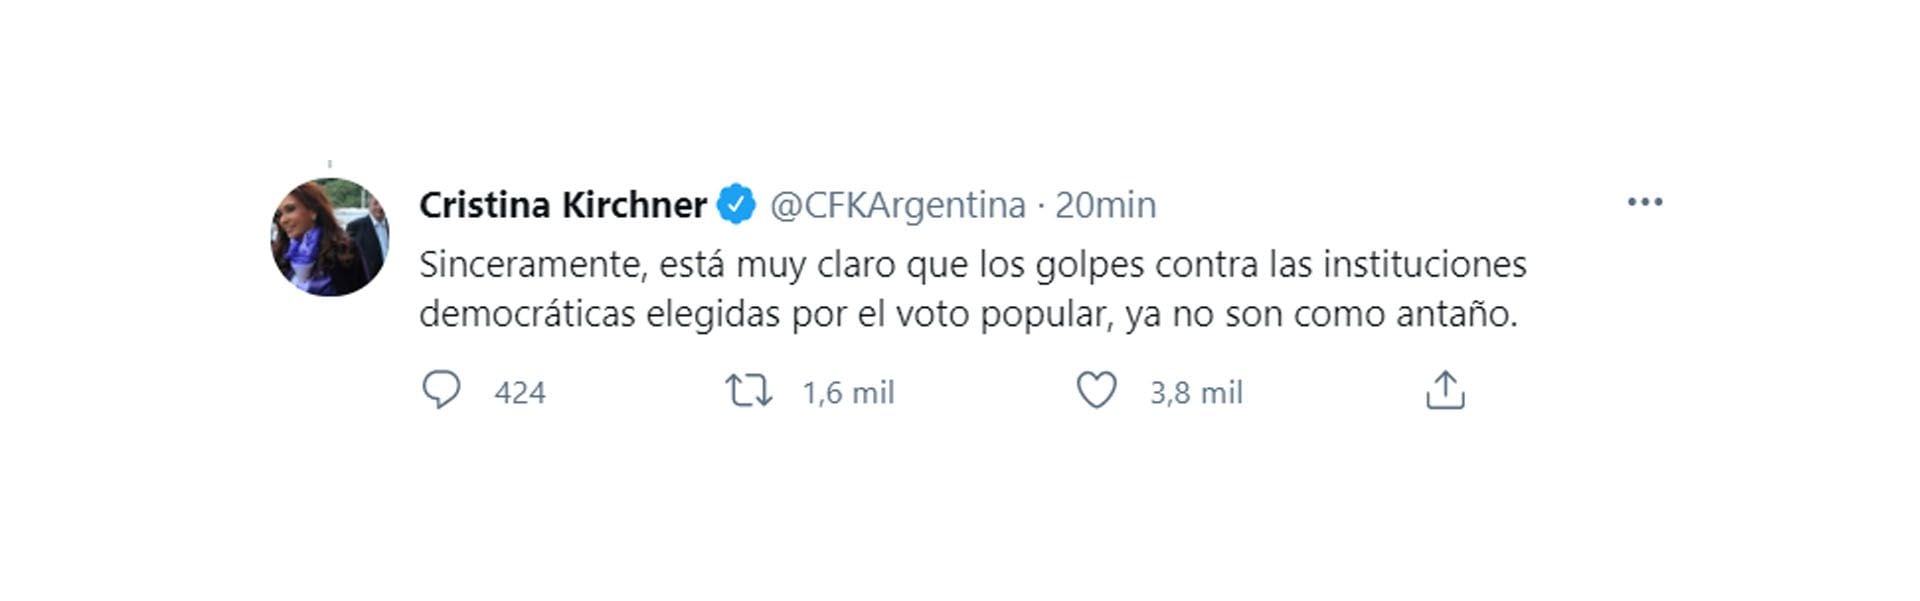 Uno de los mensajes de Cristina Kirchner tras el fallo de la Corte Suprema de Justicia (Twitter)